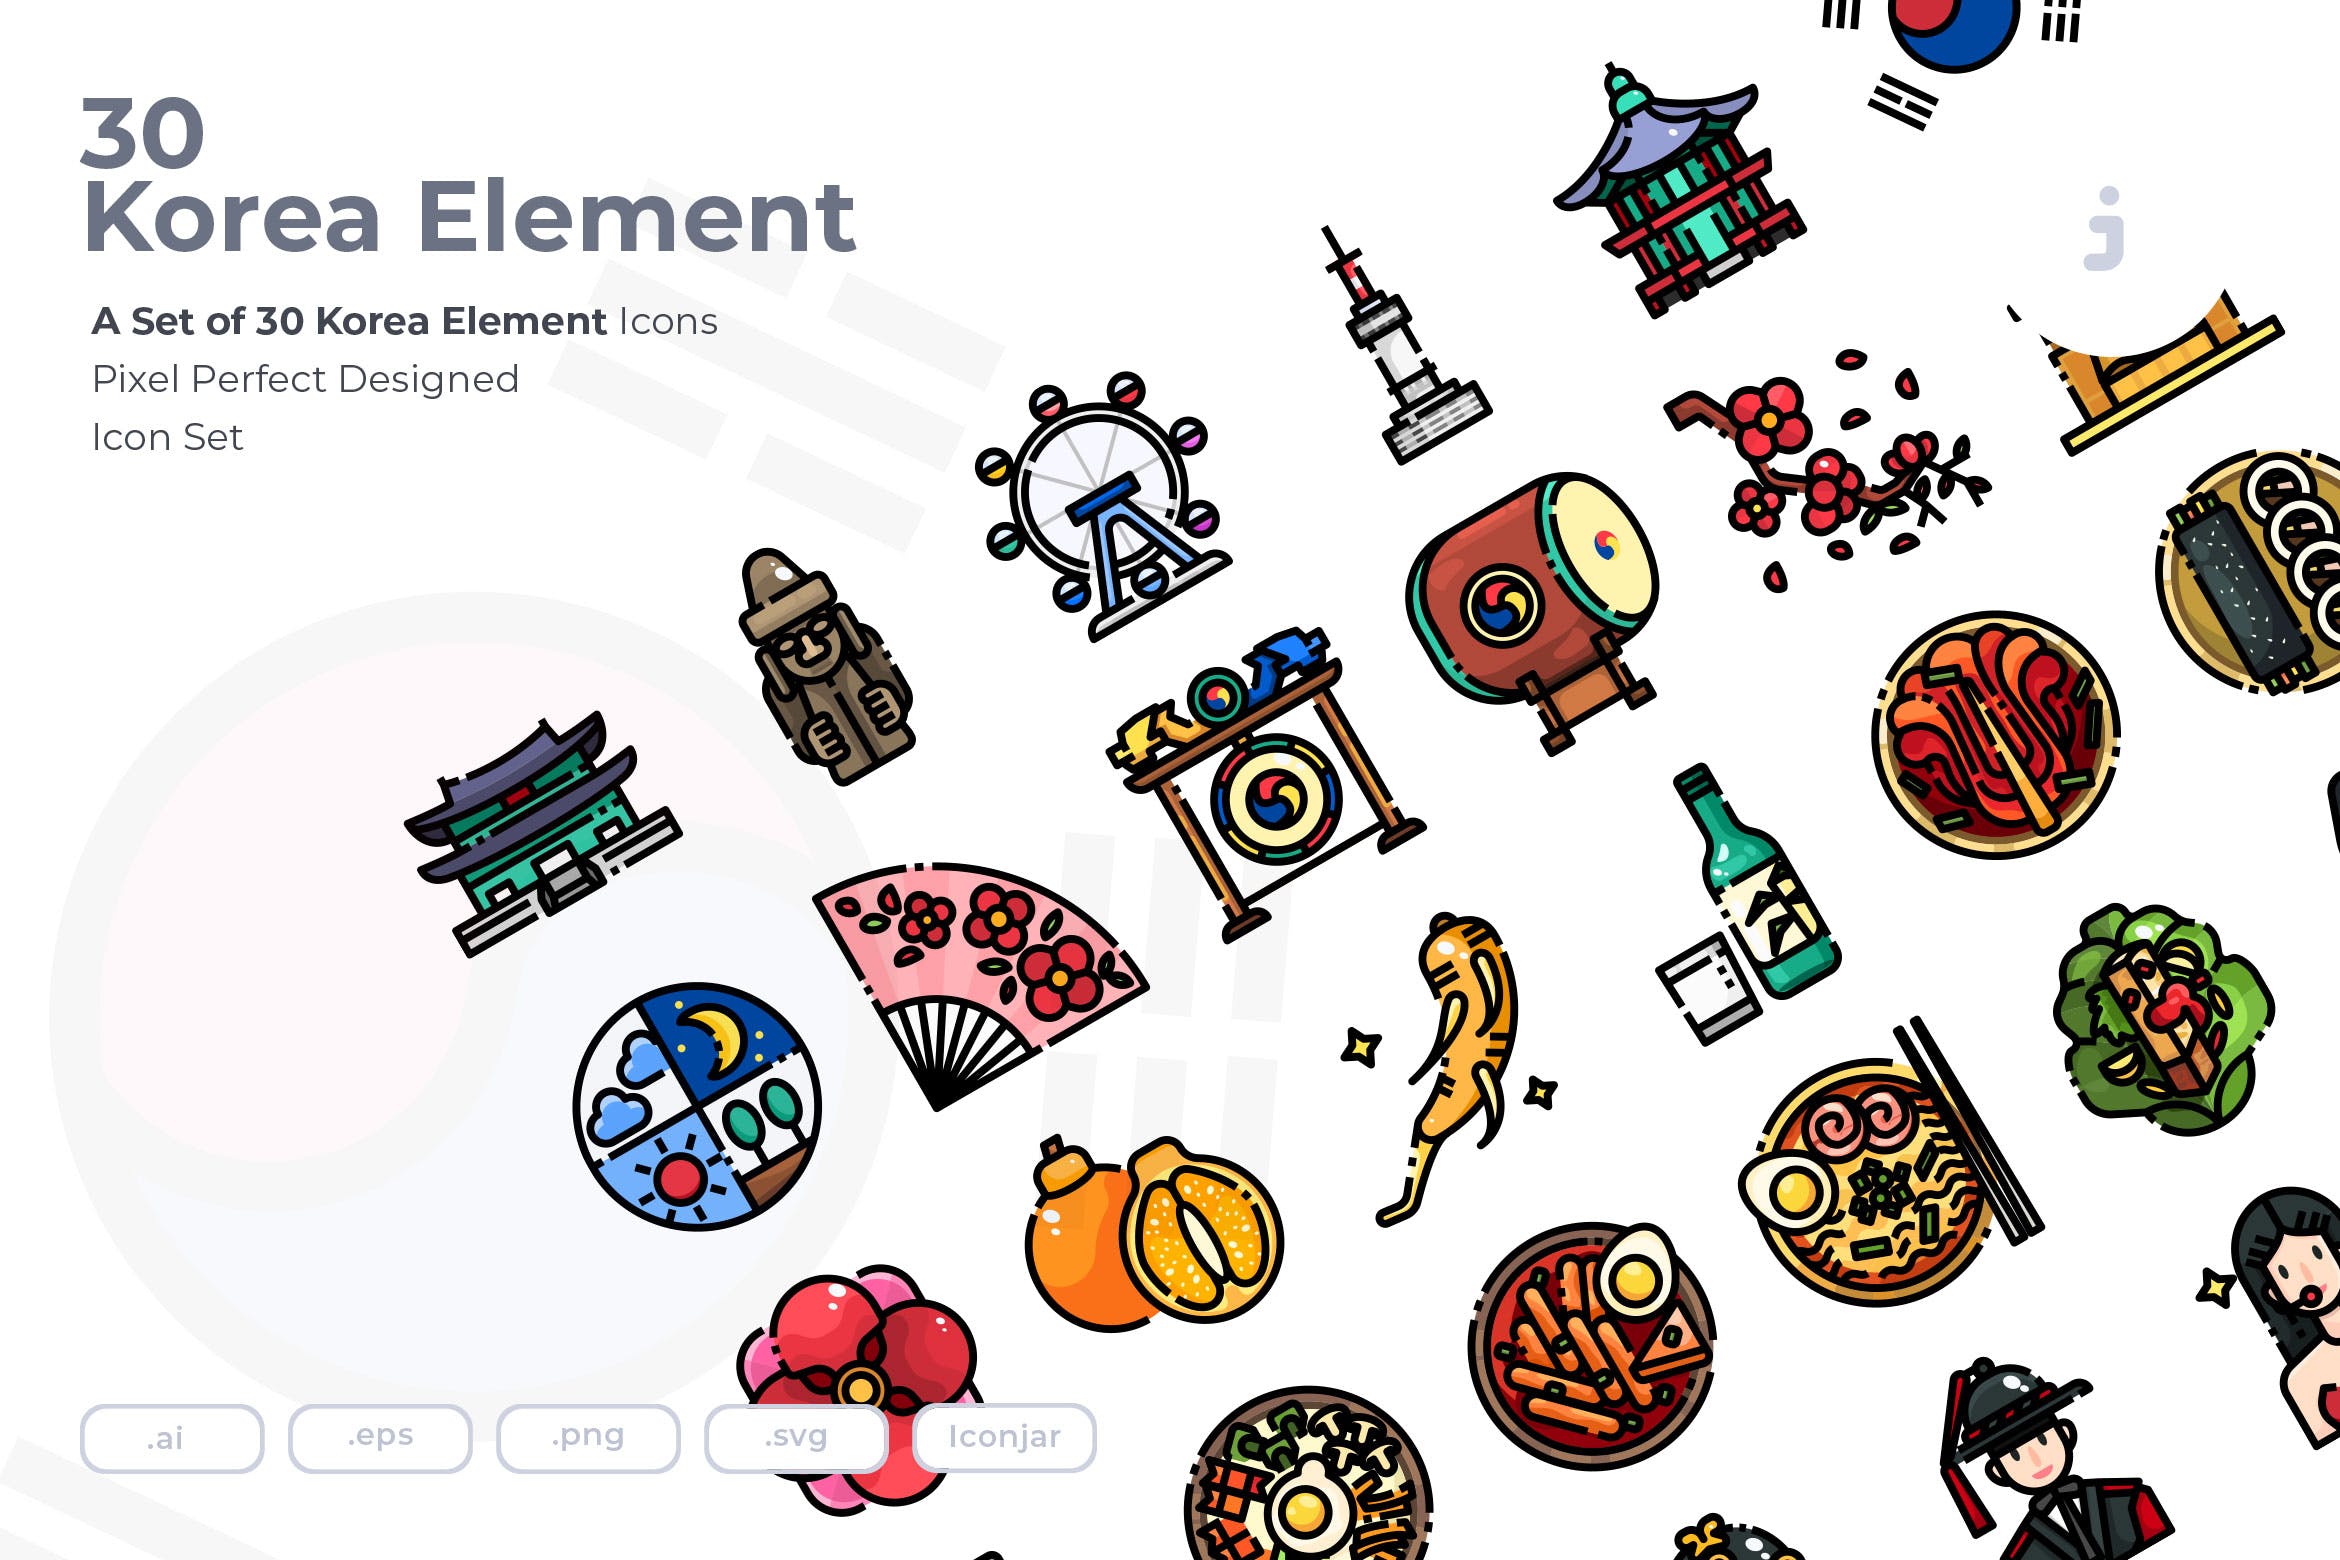 30个韩国元素描边风图标源文件下载30 Korea Element Icons插图